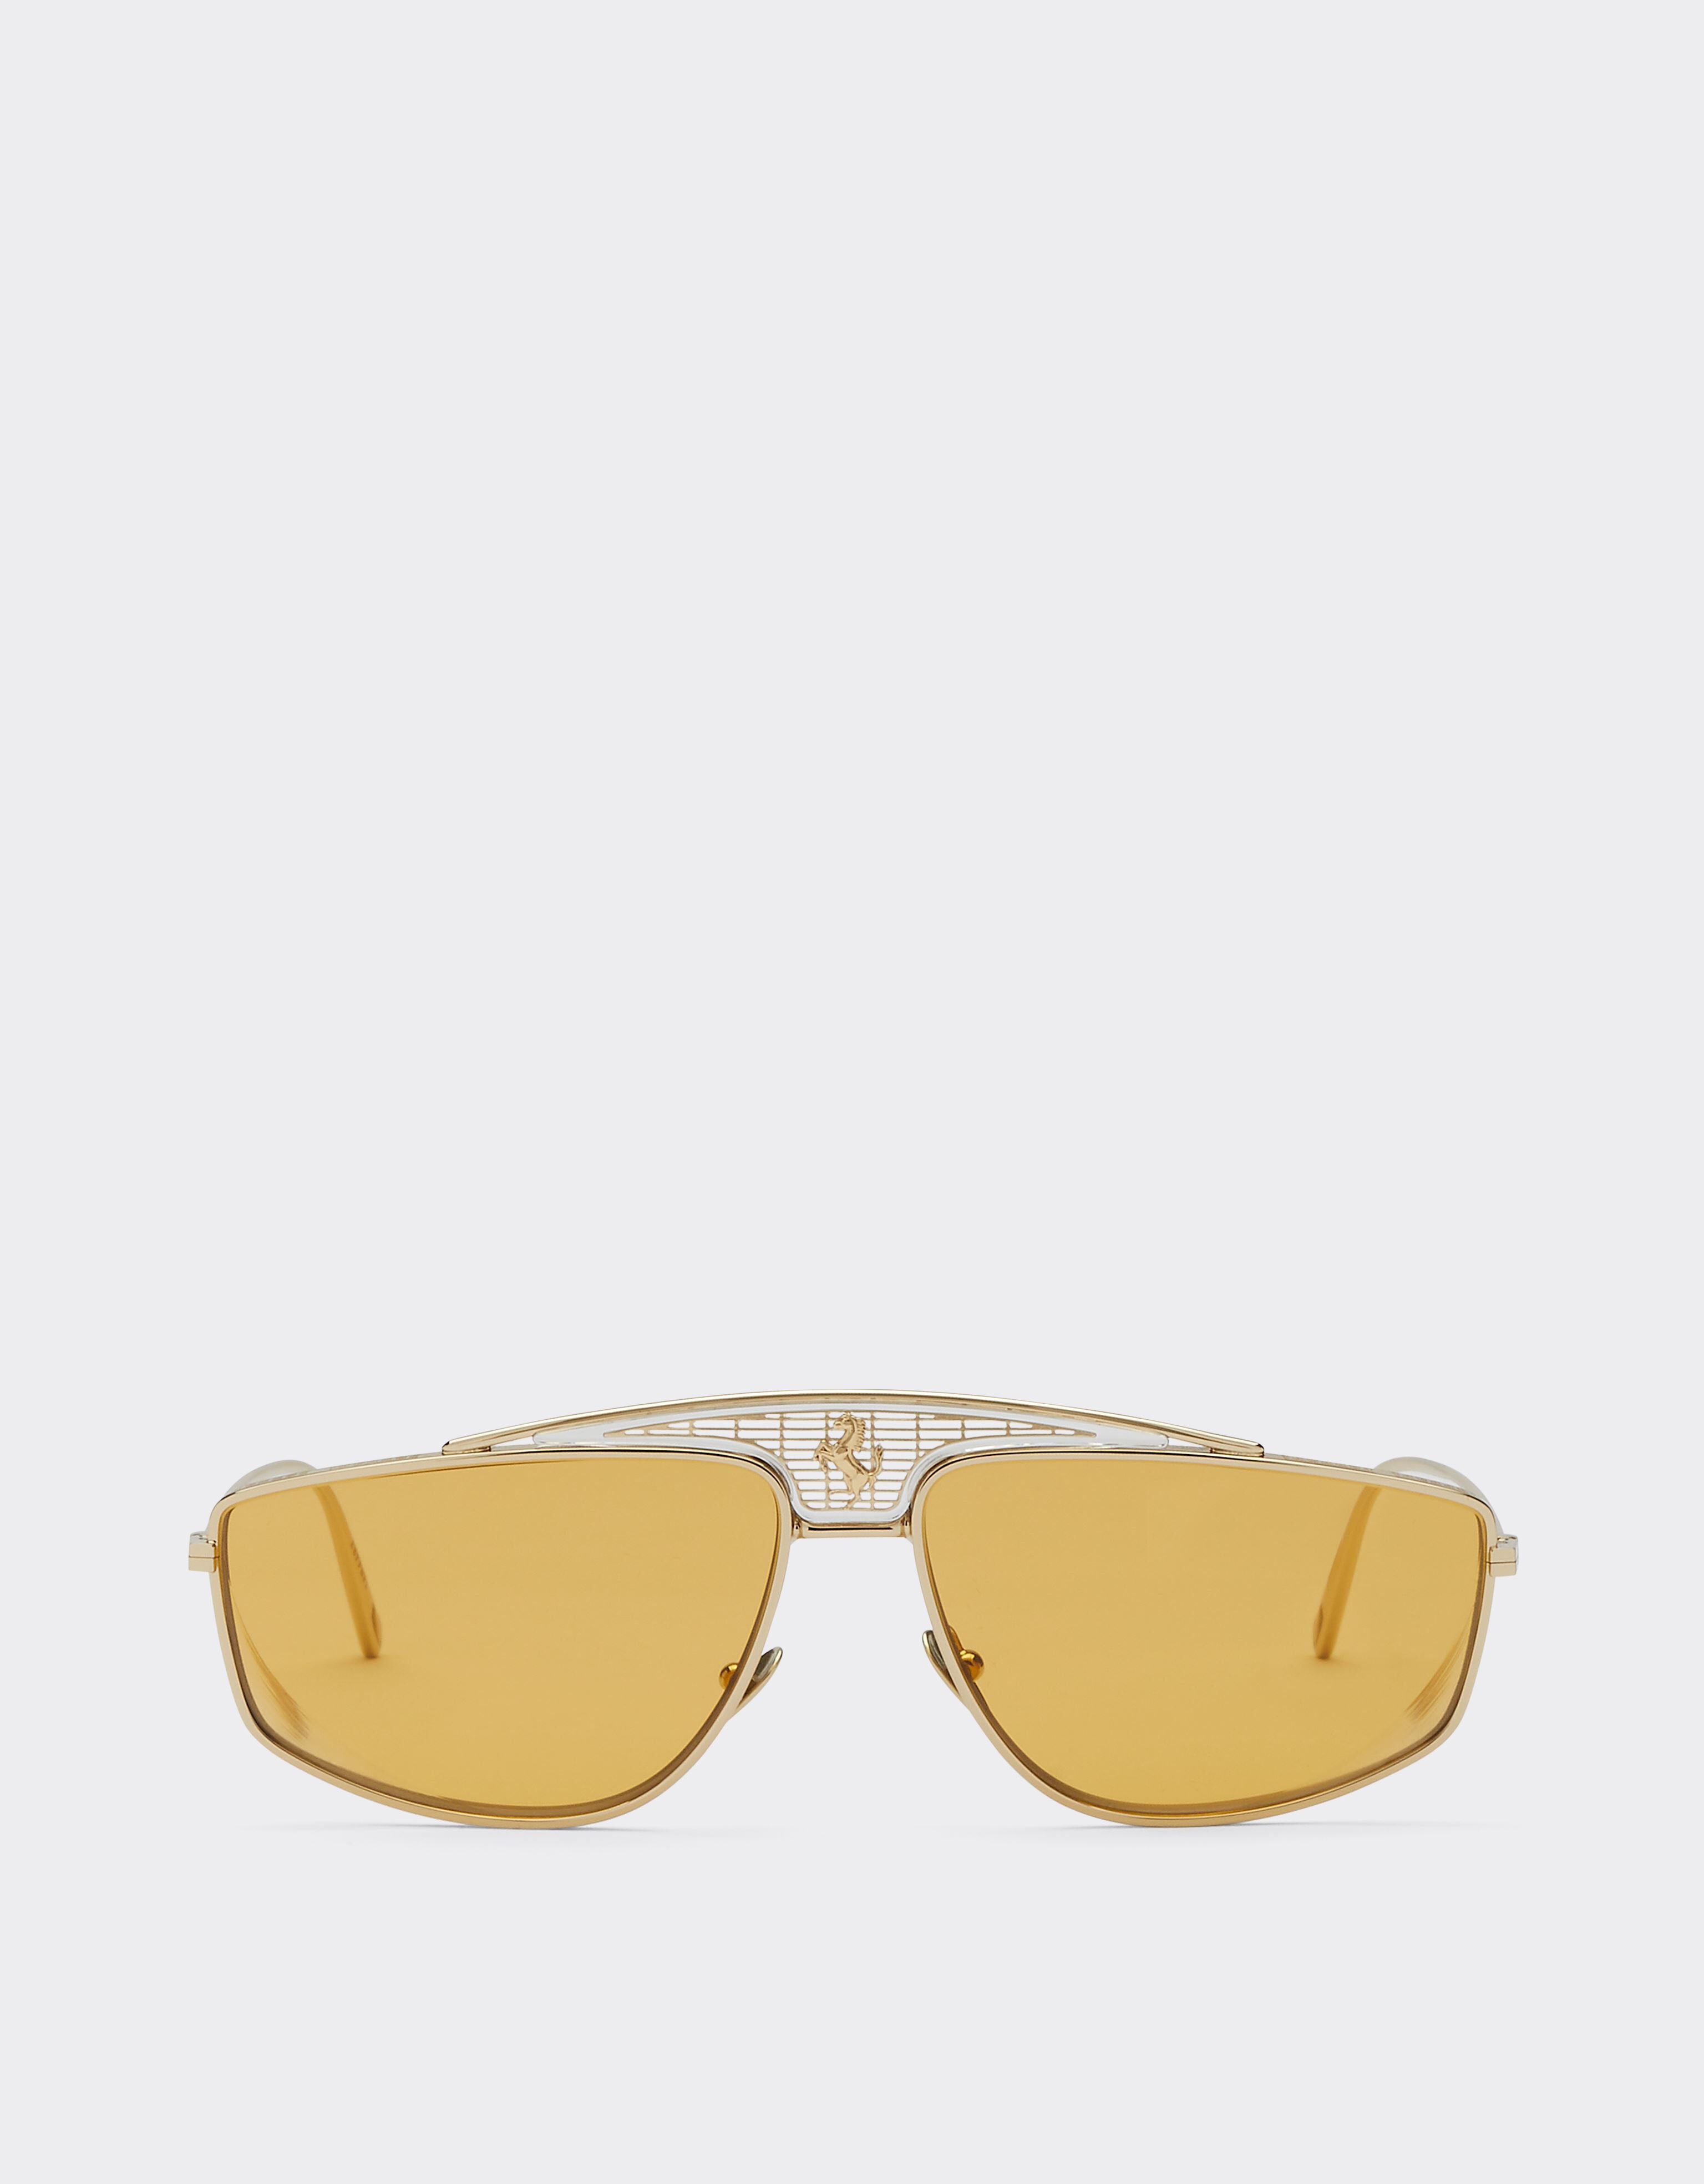 Ferrari Ferrari-Sonnenbrille mit gelben Gläsern Gold F0411f